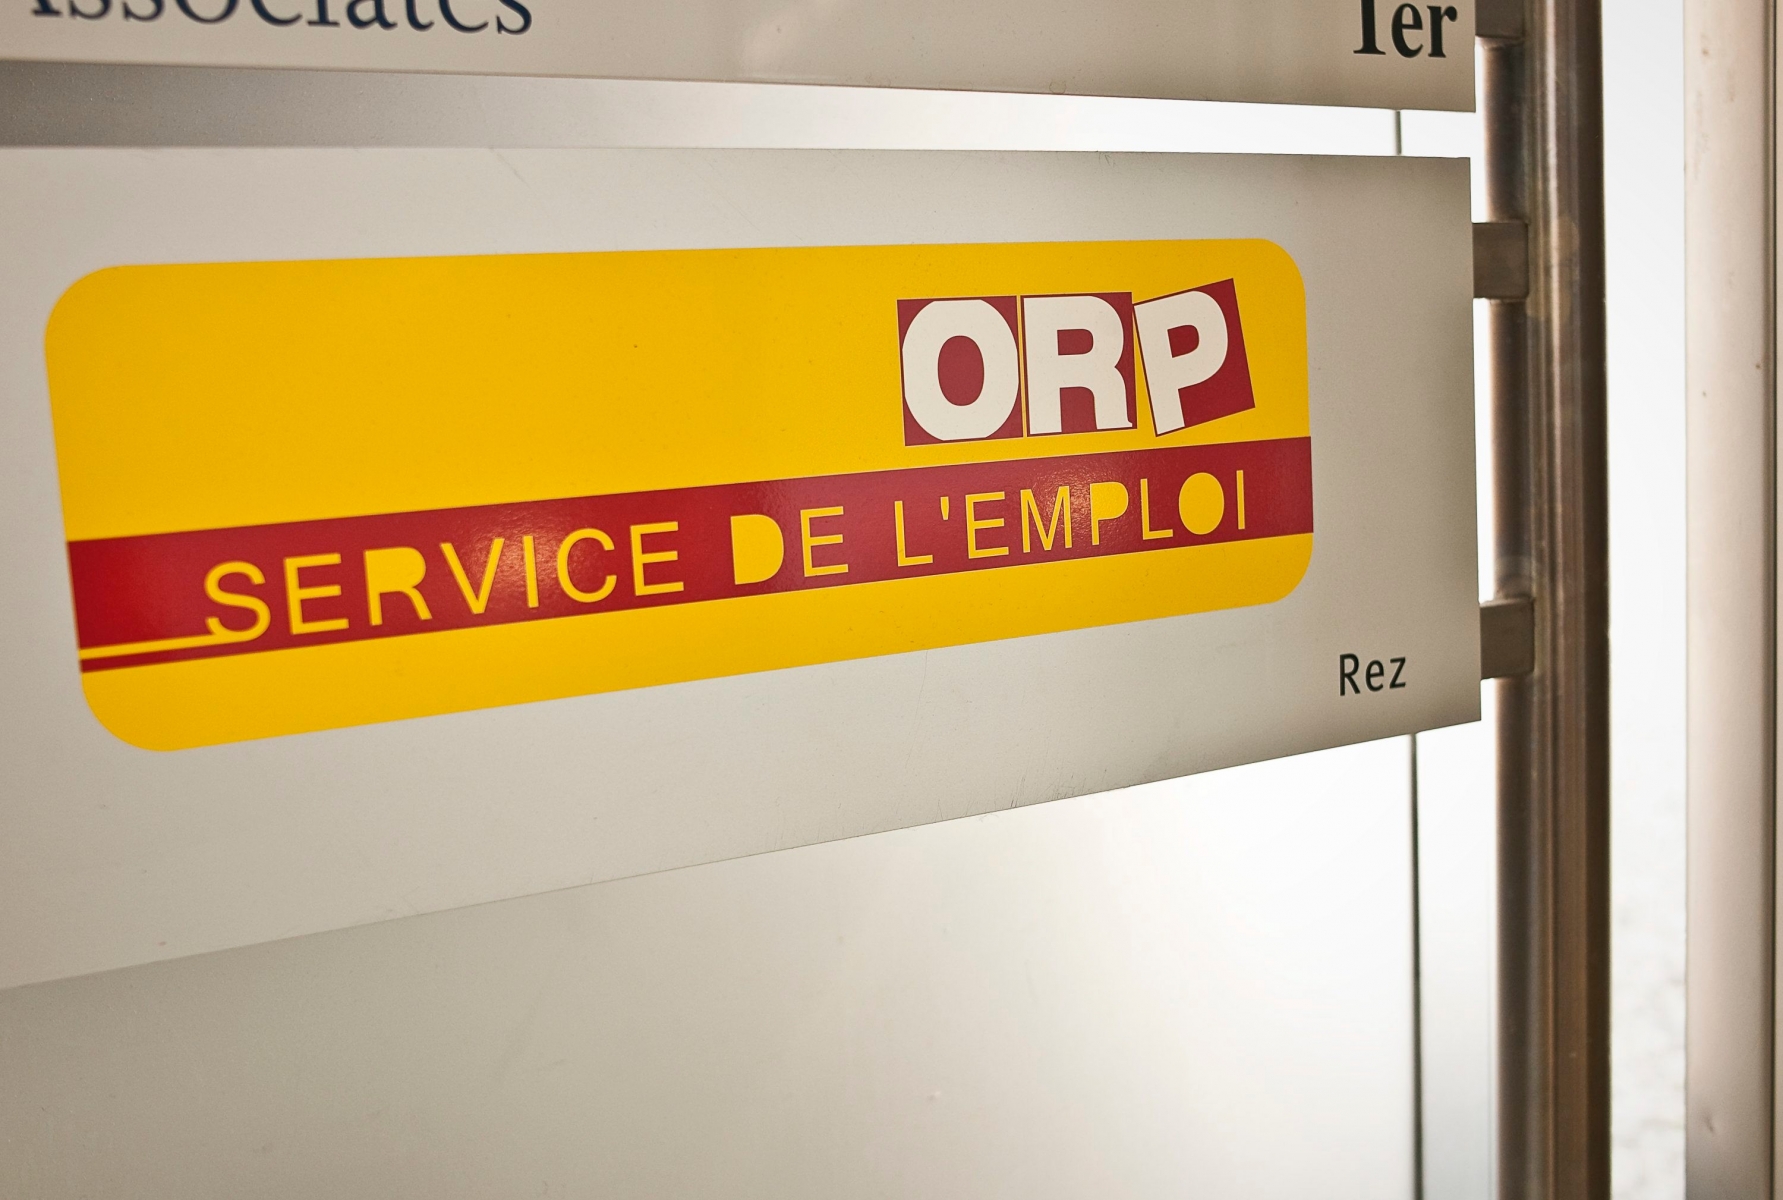 Accueil de l'Office regional de placement (ORP) a Neuchatel 



Neuchatel, le 9 mars 2010

Photo: Guillaume Perret  CHOMAGE